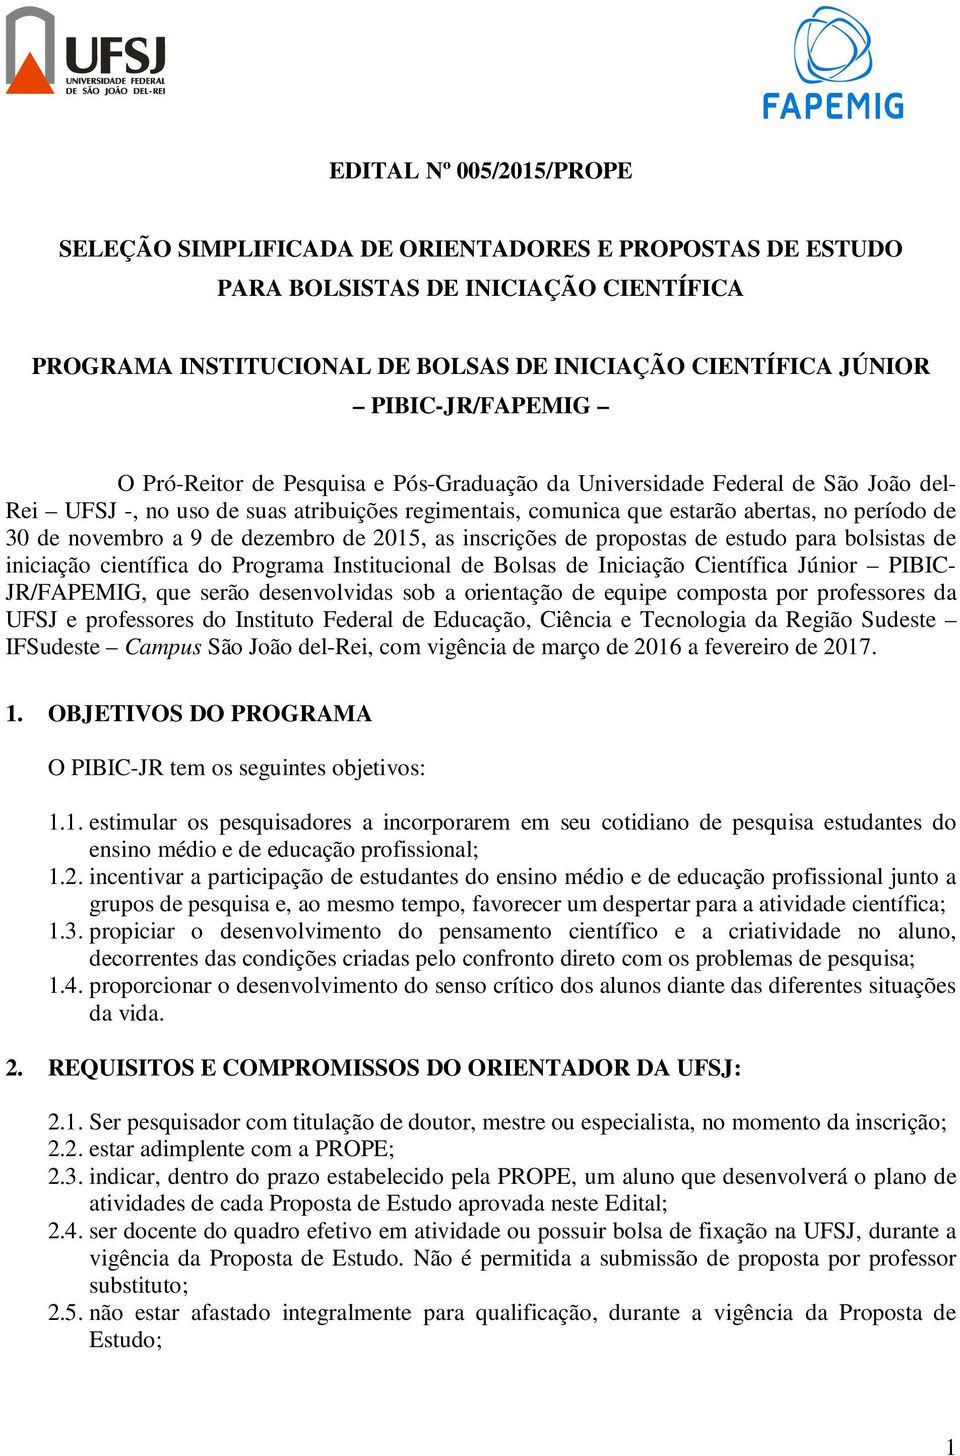 de novembro a 9 de dezembro de 2015, as inscrições de propostas de estudo para bolsistas de iniciação científica do Programa Institucional de Bolsas de Iniciação Científica Júnior PIBIC- JR/FAPEMIG,